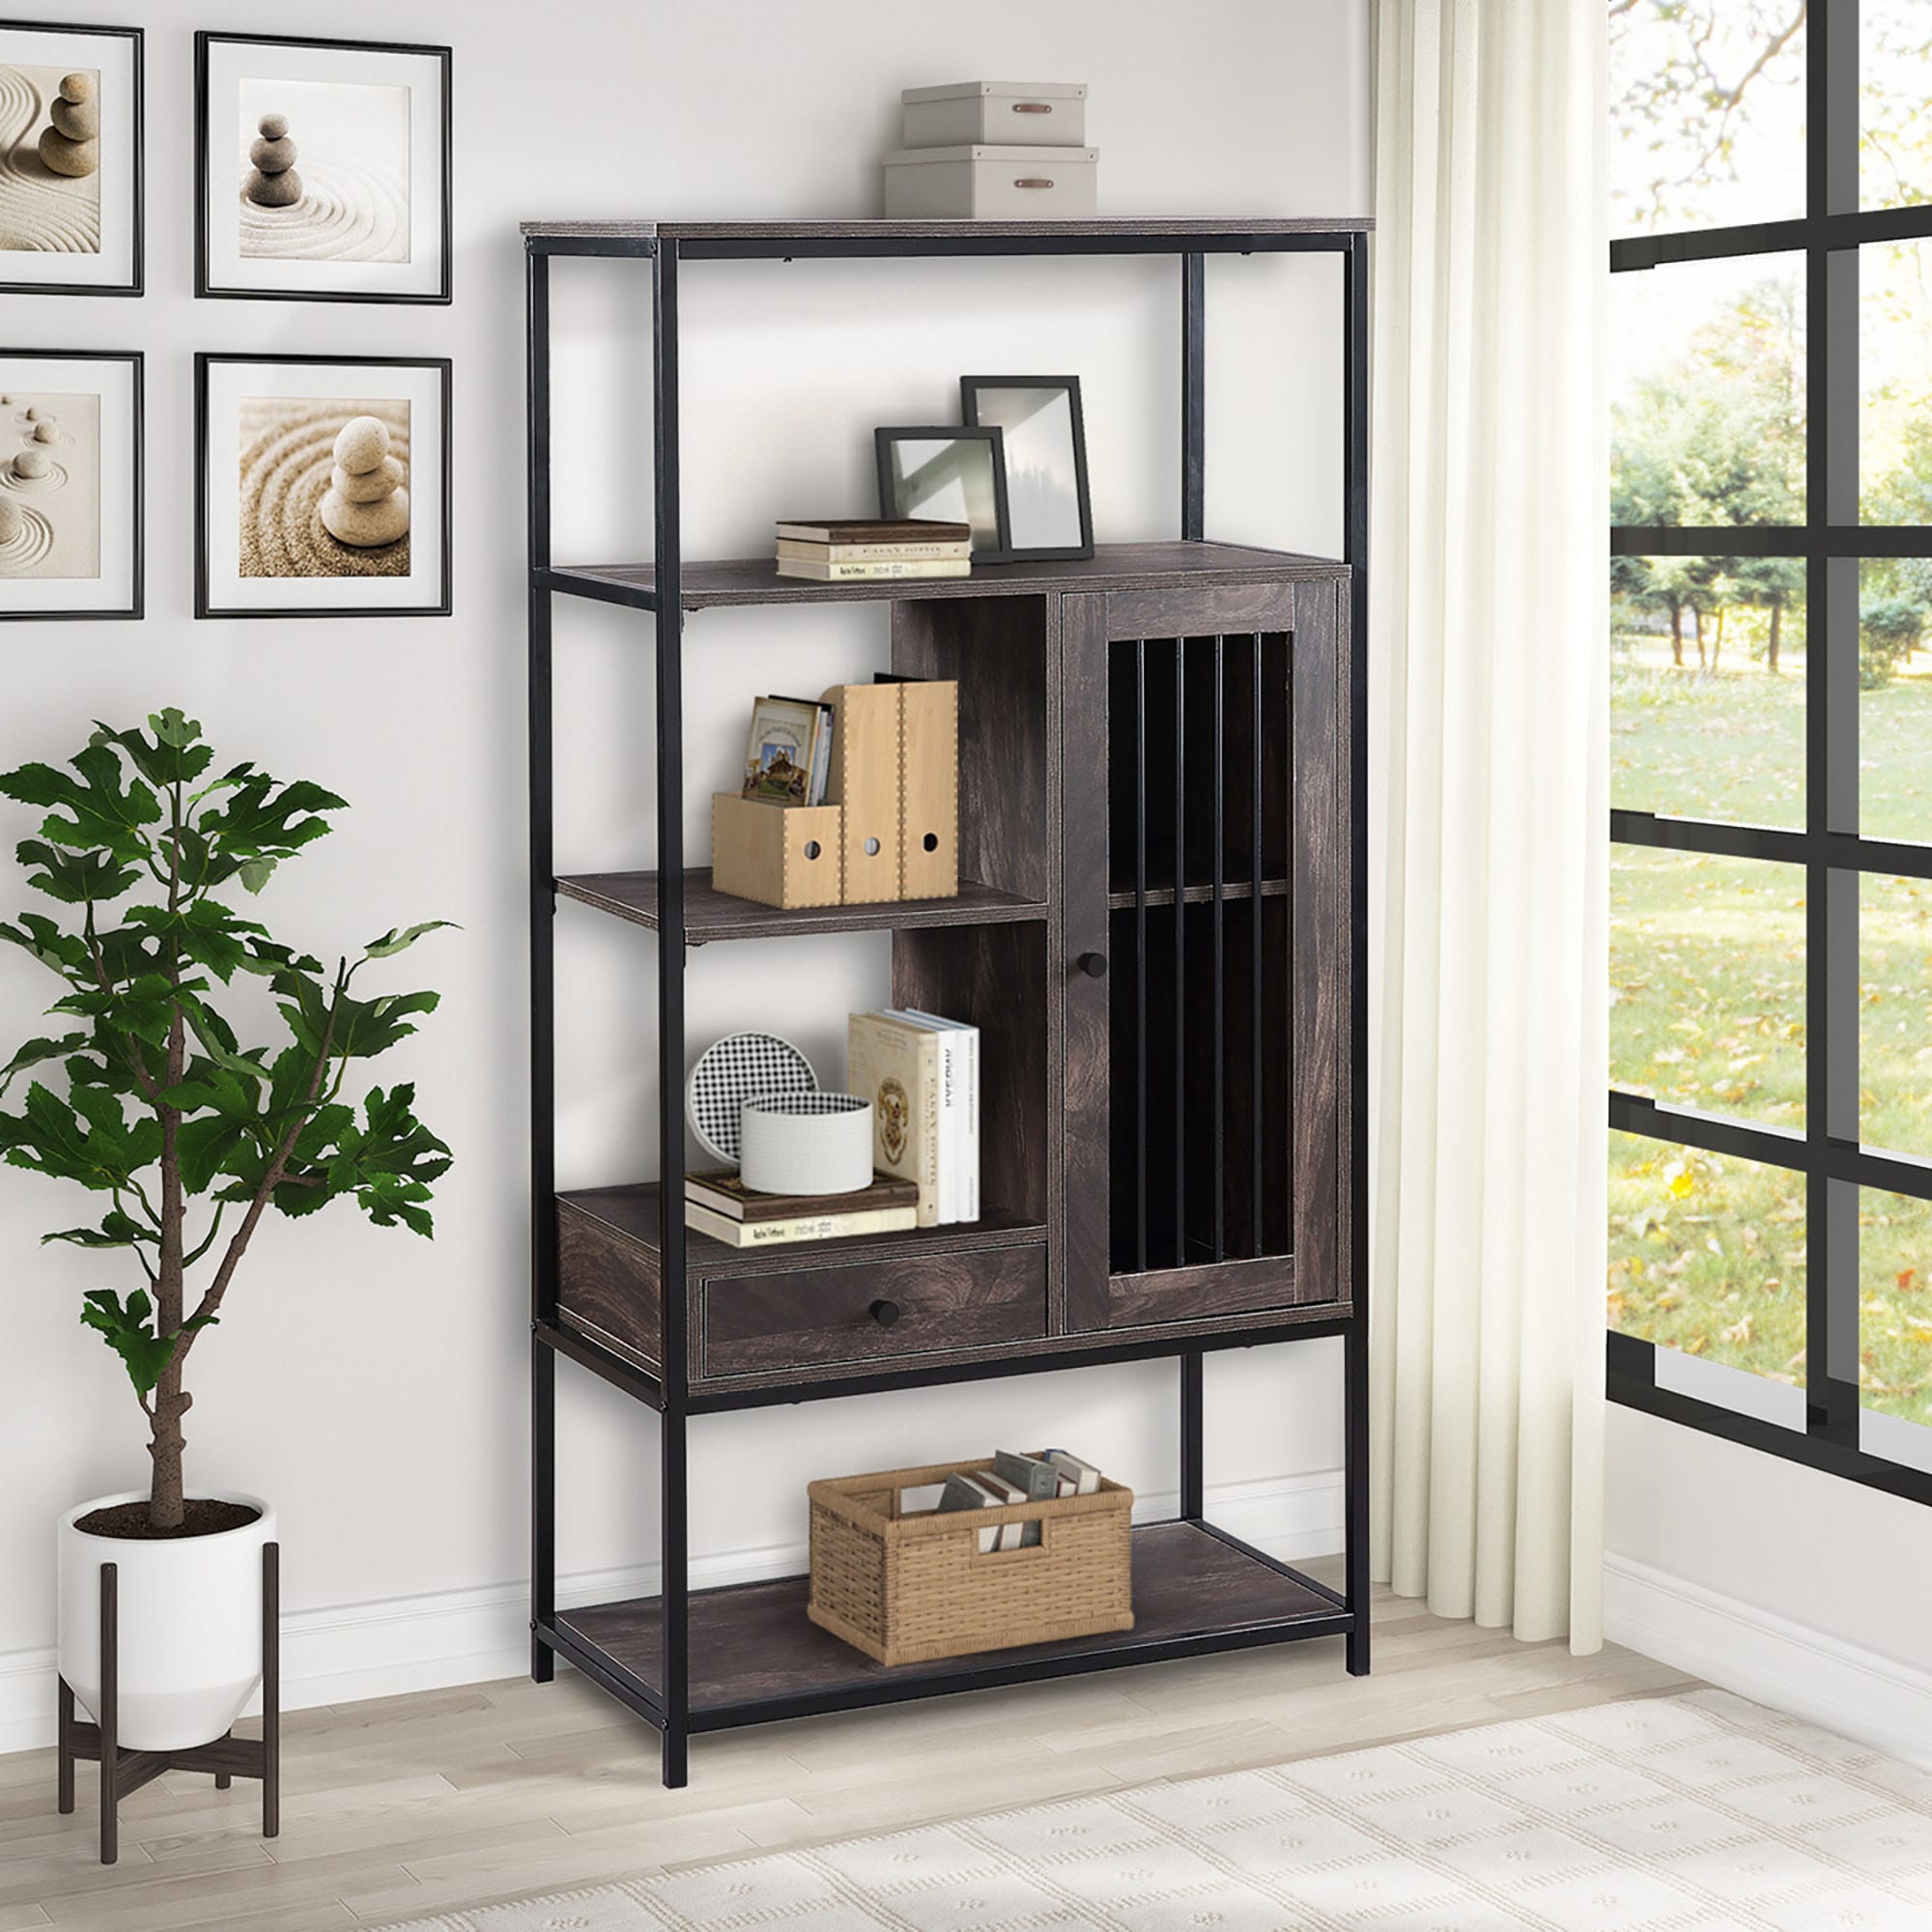 CASAINC Brown Wood 5 Shelf Bookcase .4 in W x  in H x .7 in